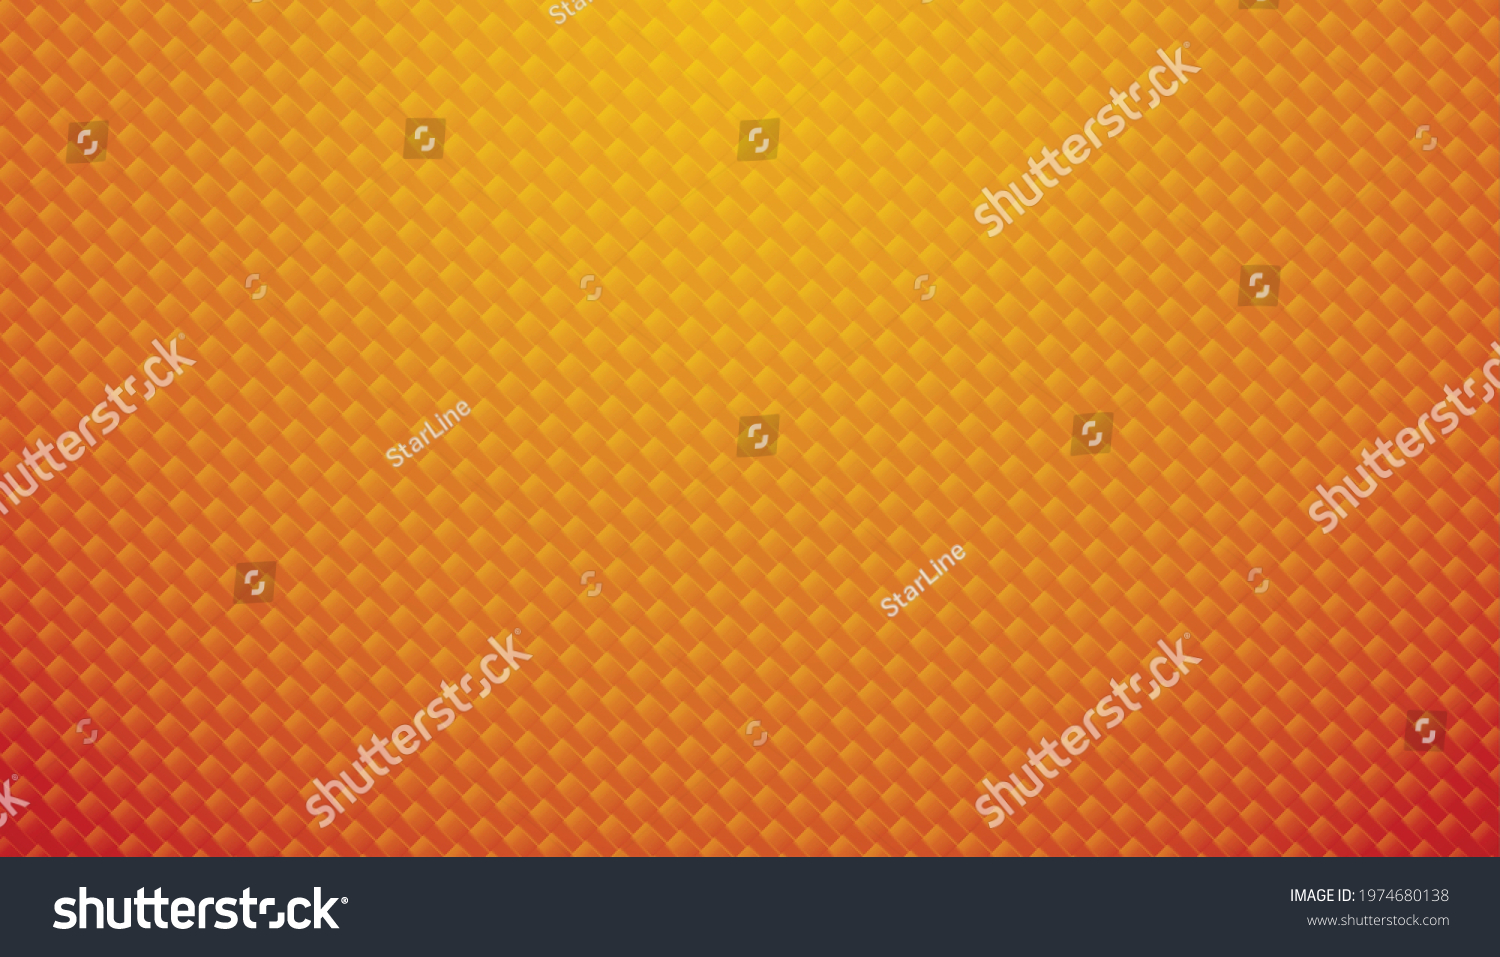 SVG of orange carbon fiber texture background svg